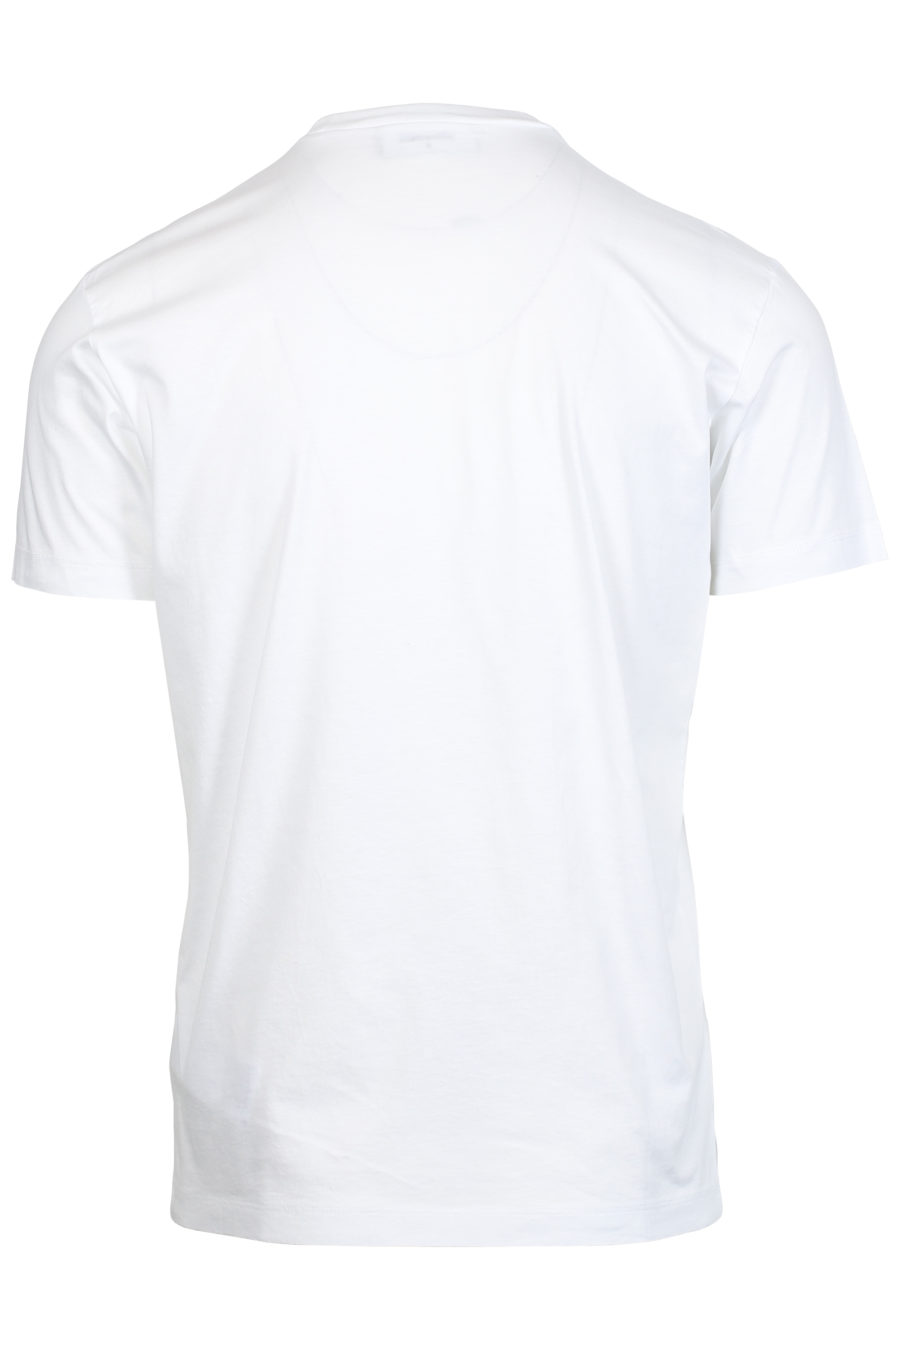 T-shirt branca com estampado de folhas - IMG 2405